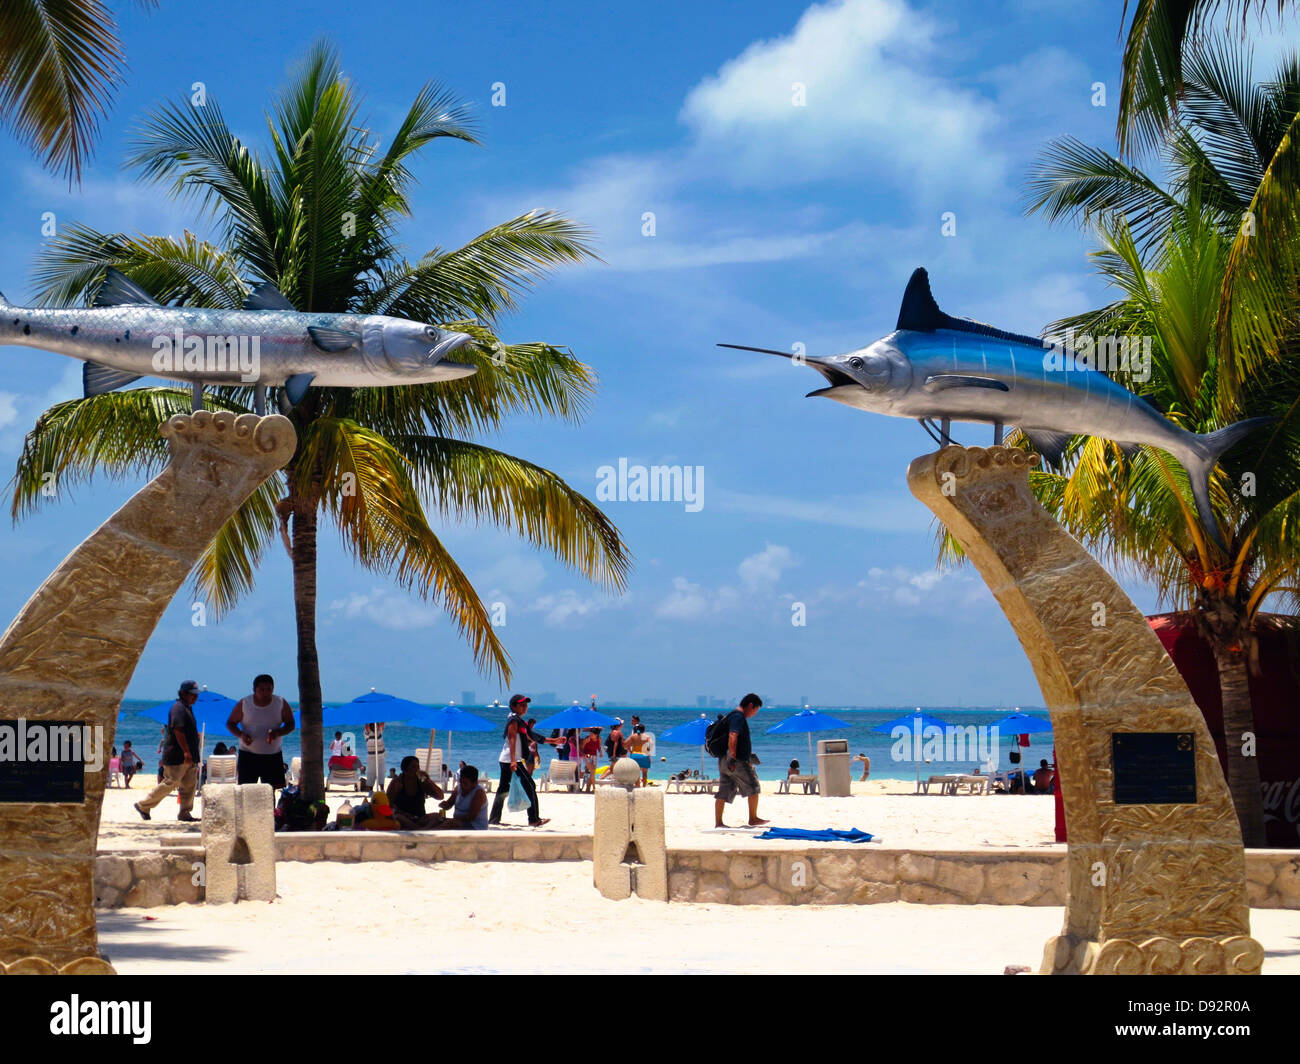 Porte d'entrée avec des sculptures de poissons, Playa Norte, Isla Mujeres, Yucatan, Mexique Banque D'Images